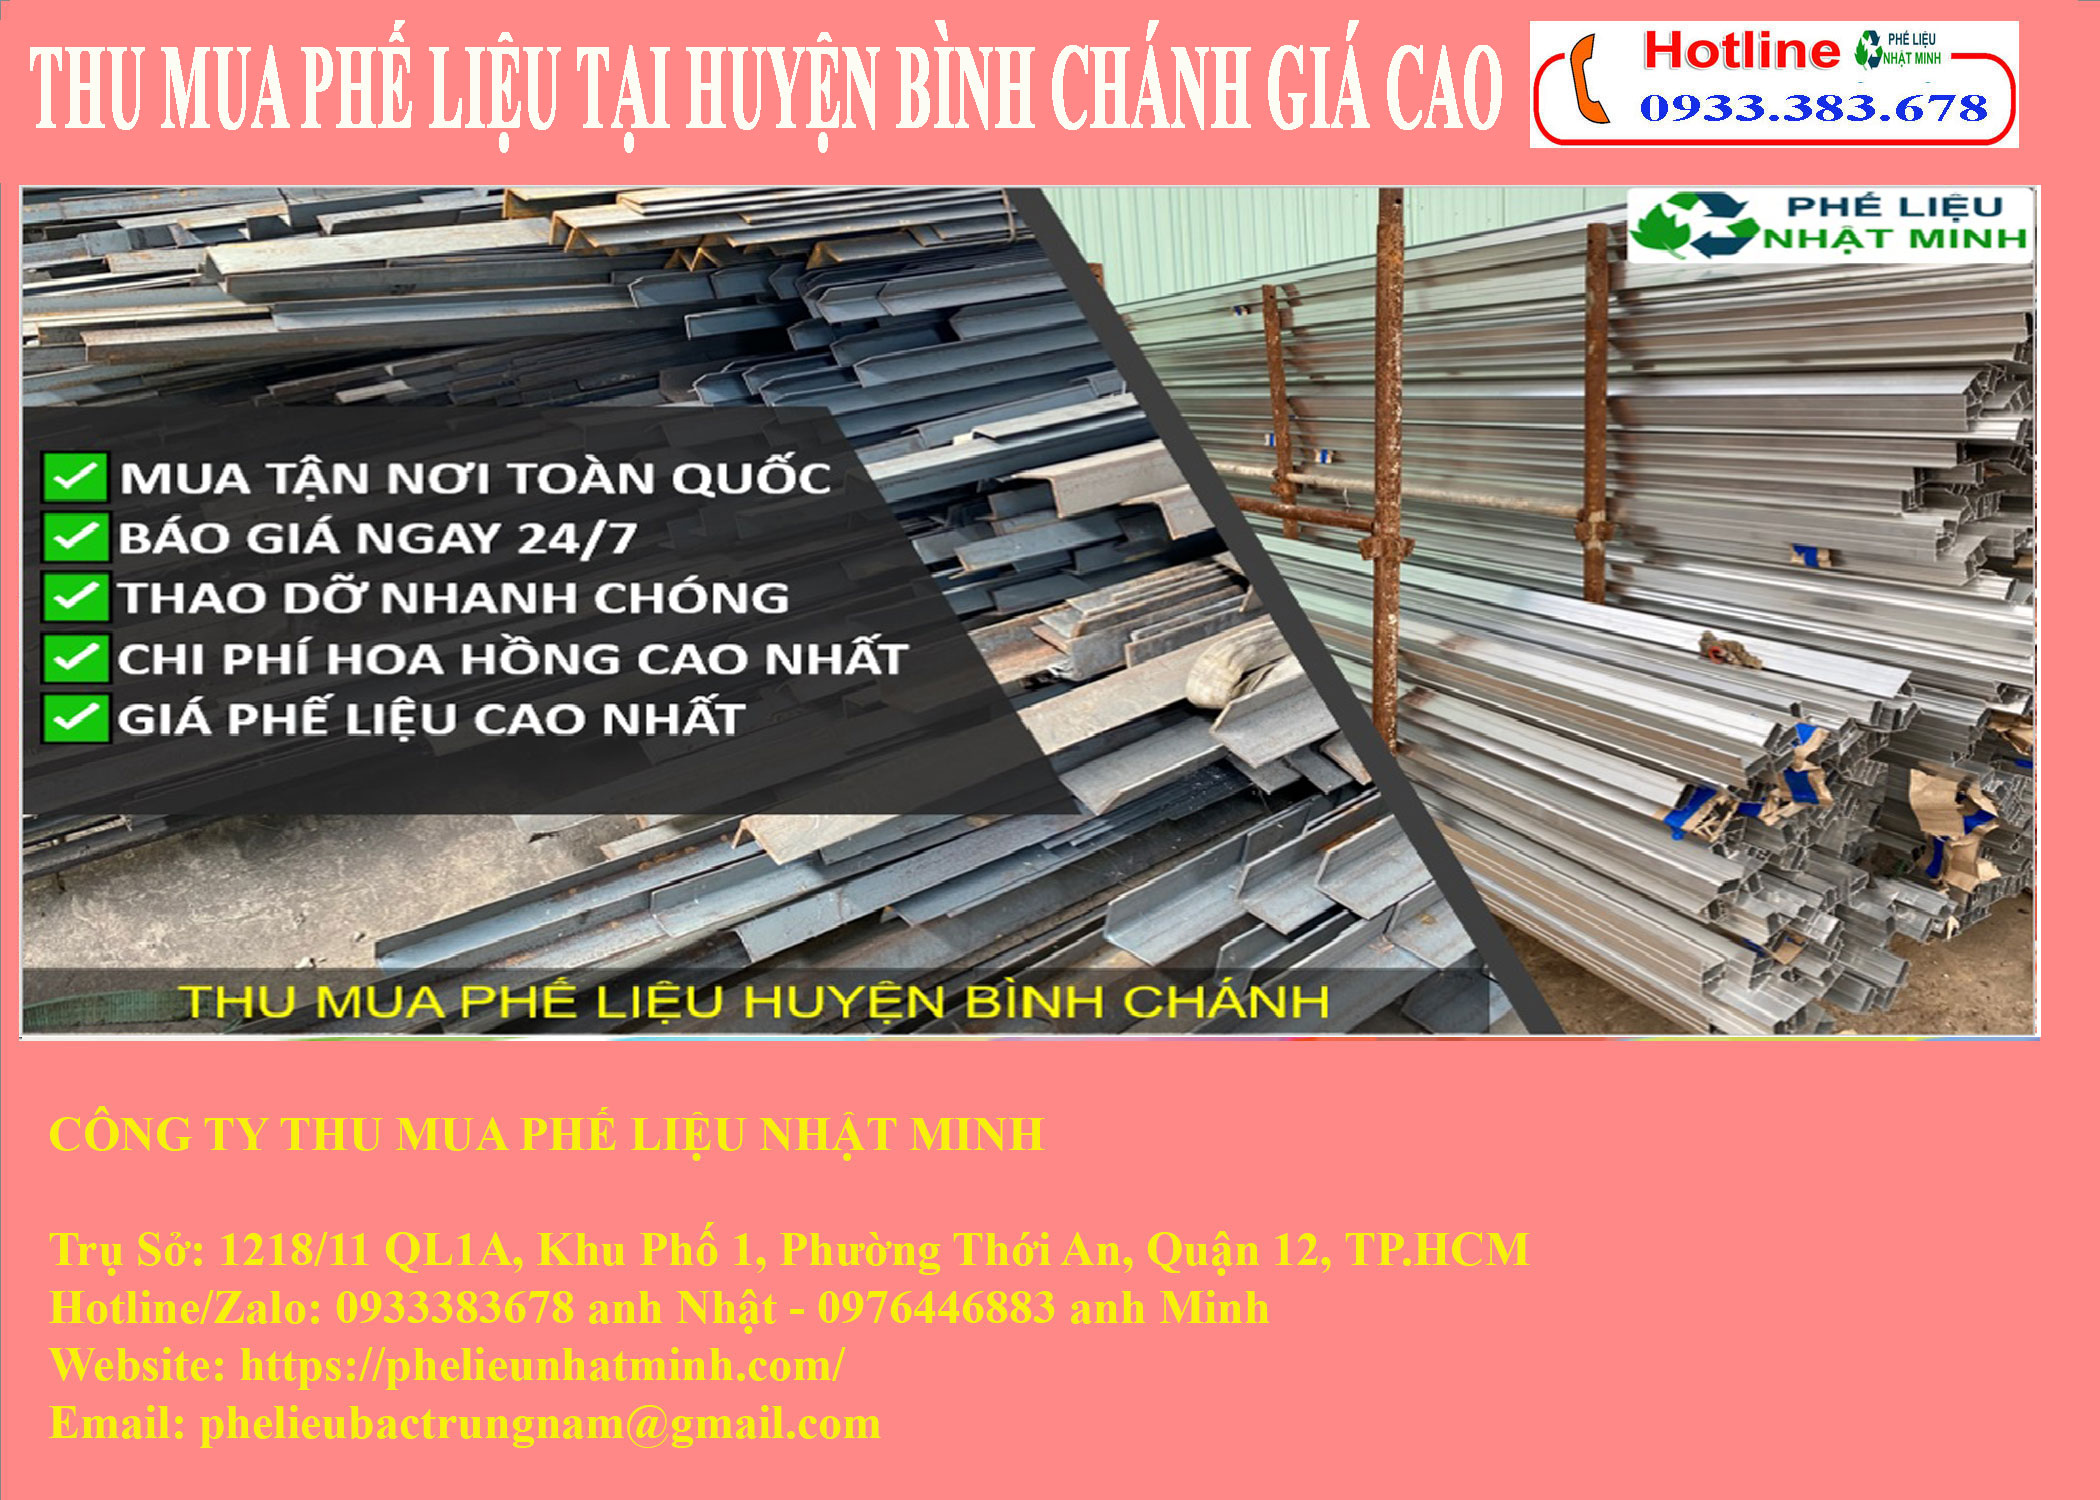 Thu mua phế liệu tại Huyện Bình Chánh giá cao, Thu mua phế liệu Huyện Bình Chánh, Thu mua phe lieu Huyen Binh Chanh